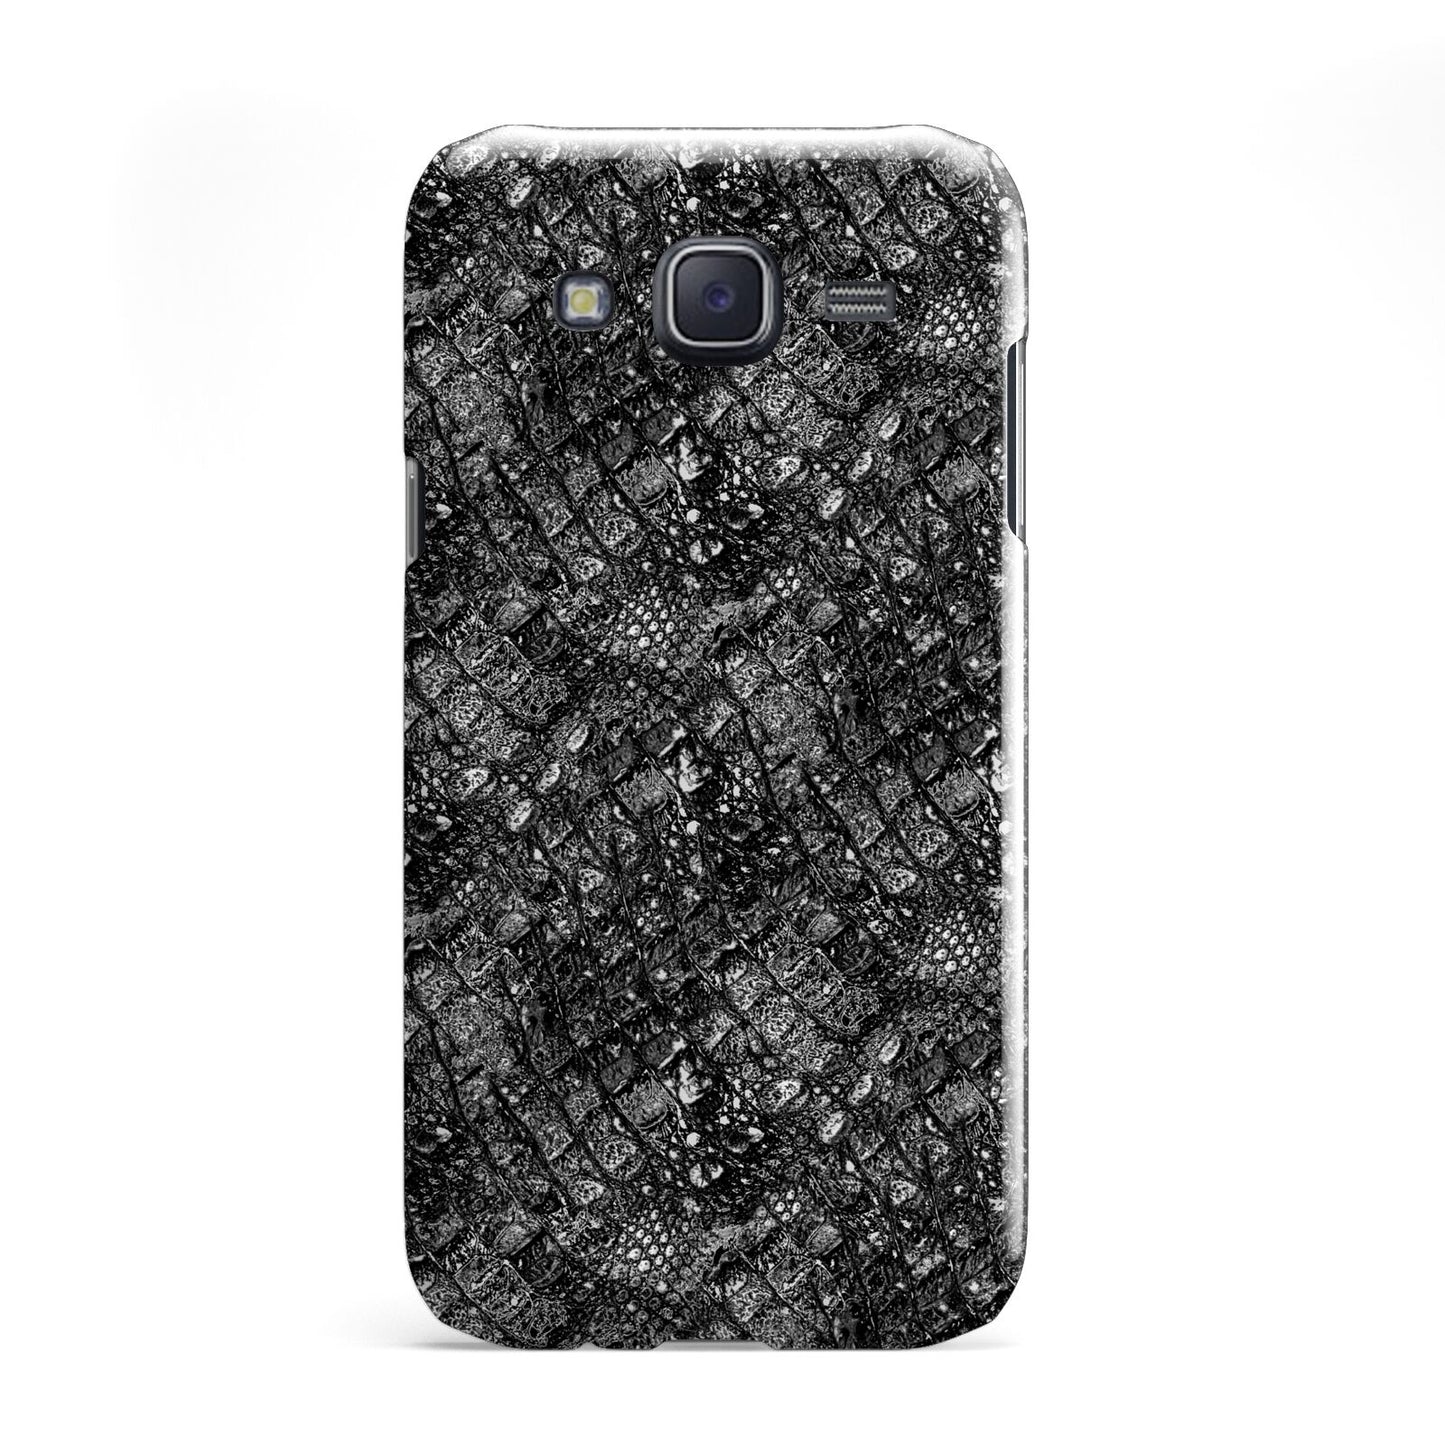 Snakeskin Design Samsung Galaxy J5 Case